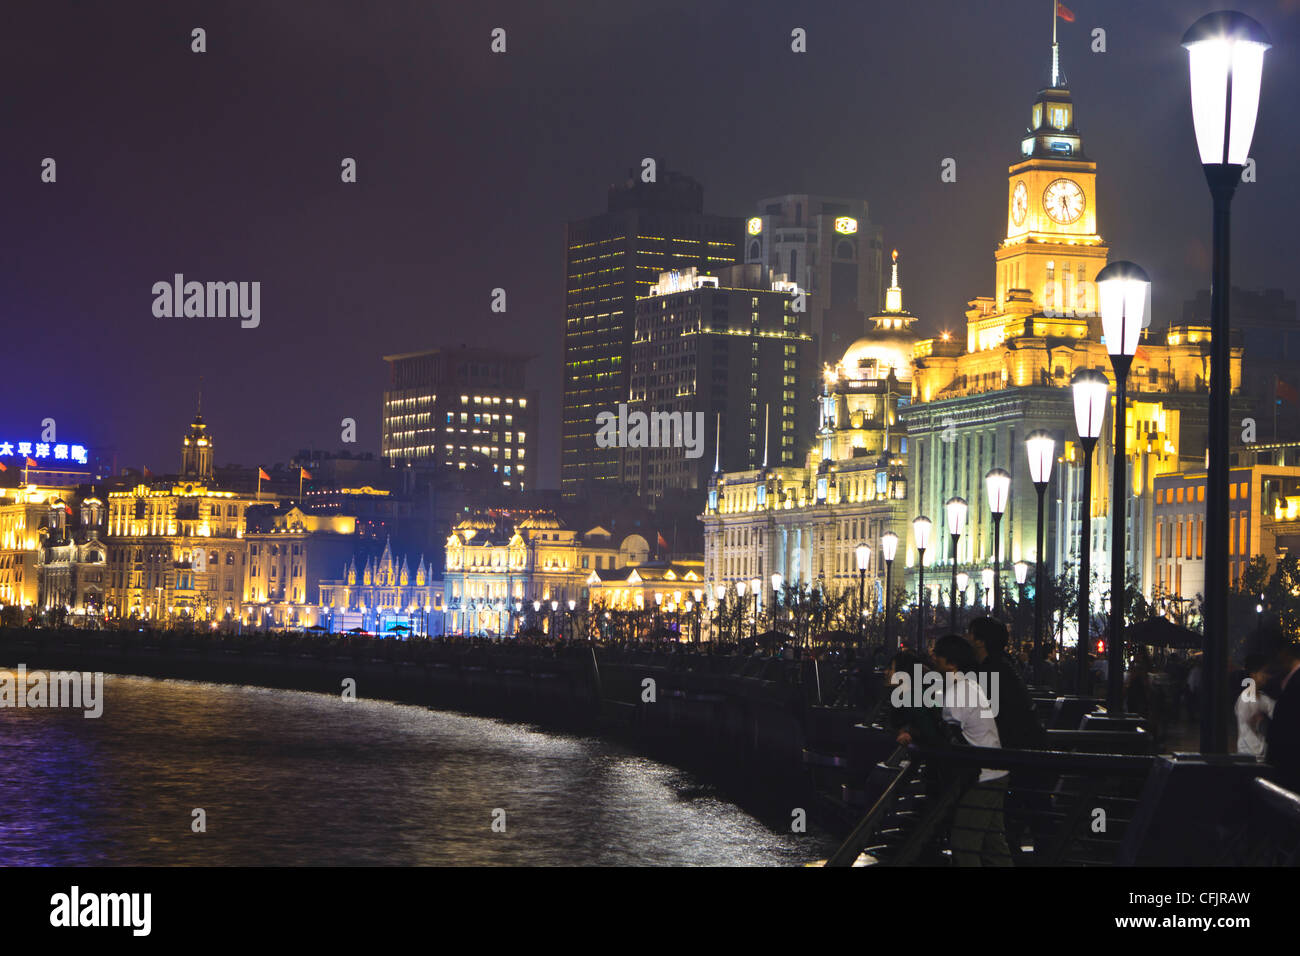 Der Bund in der Nacht, Zollhaus, das 1927 erbaute, auf der rechten Seite, Shanghai, China, Asien Stockfoto